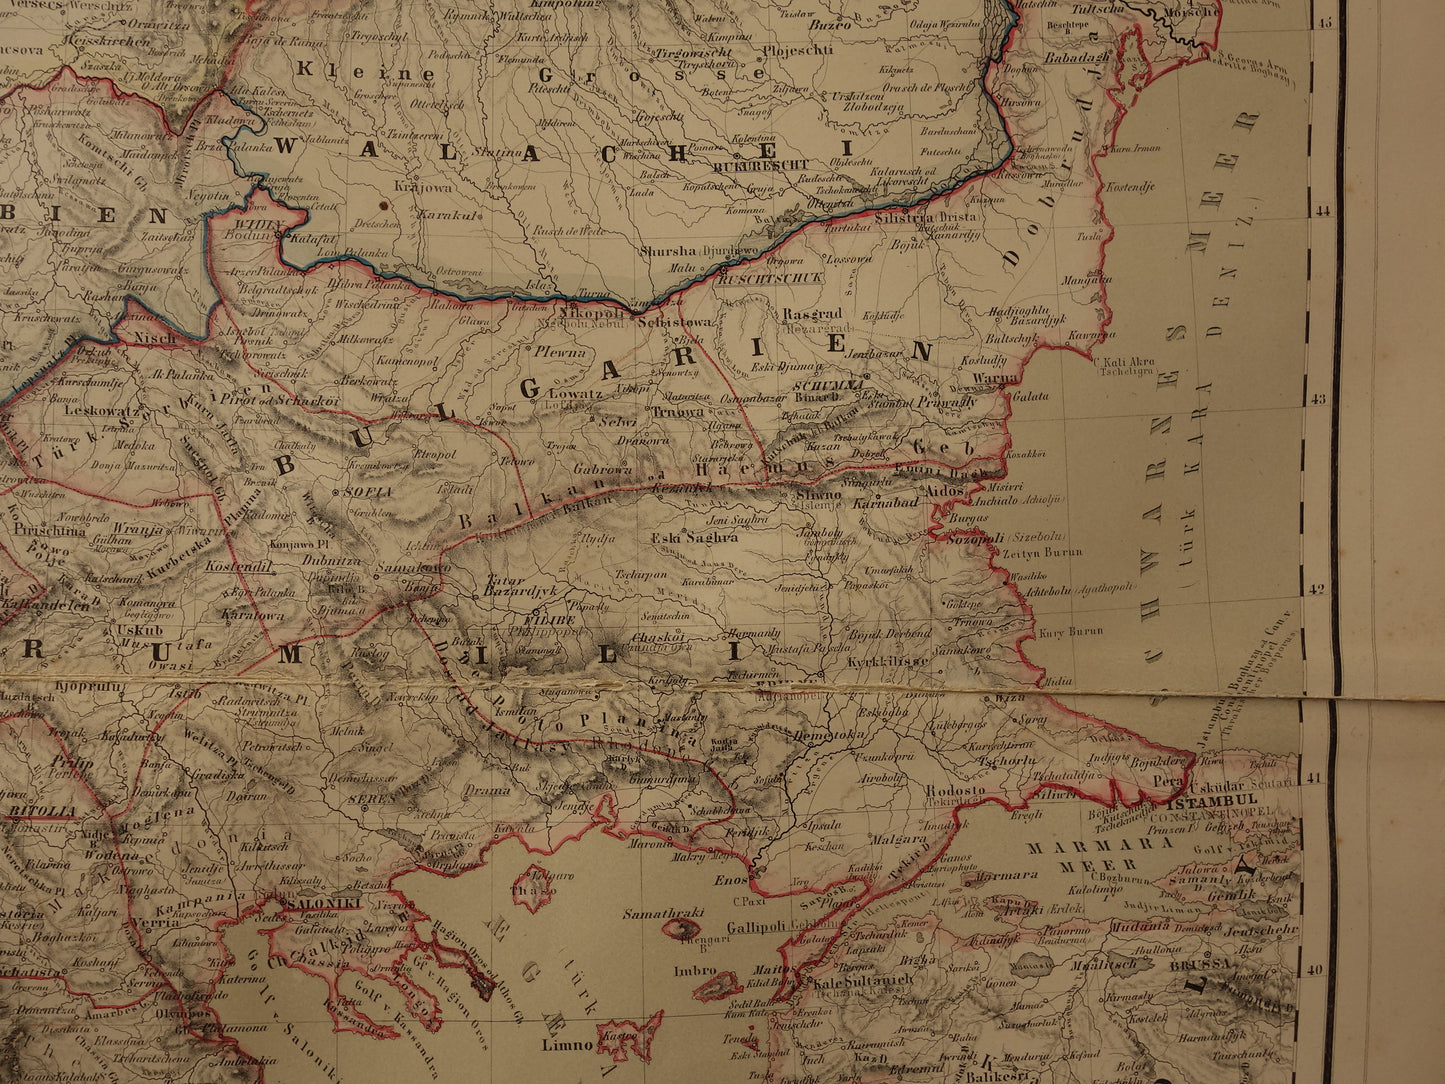 Grote Oude landkaart van de Balkan in 1856 met schade - Antieke kaart Europees Turkije Servië Griekenland handgekleurde vintage landkaarten